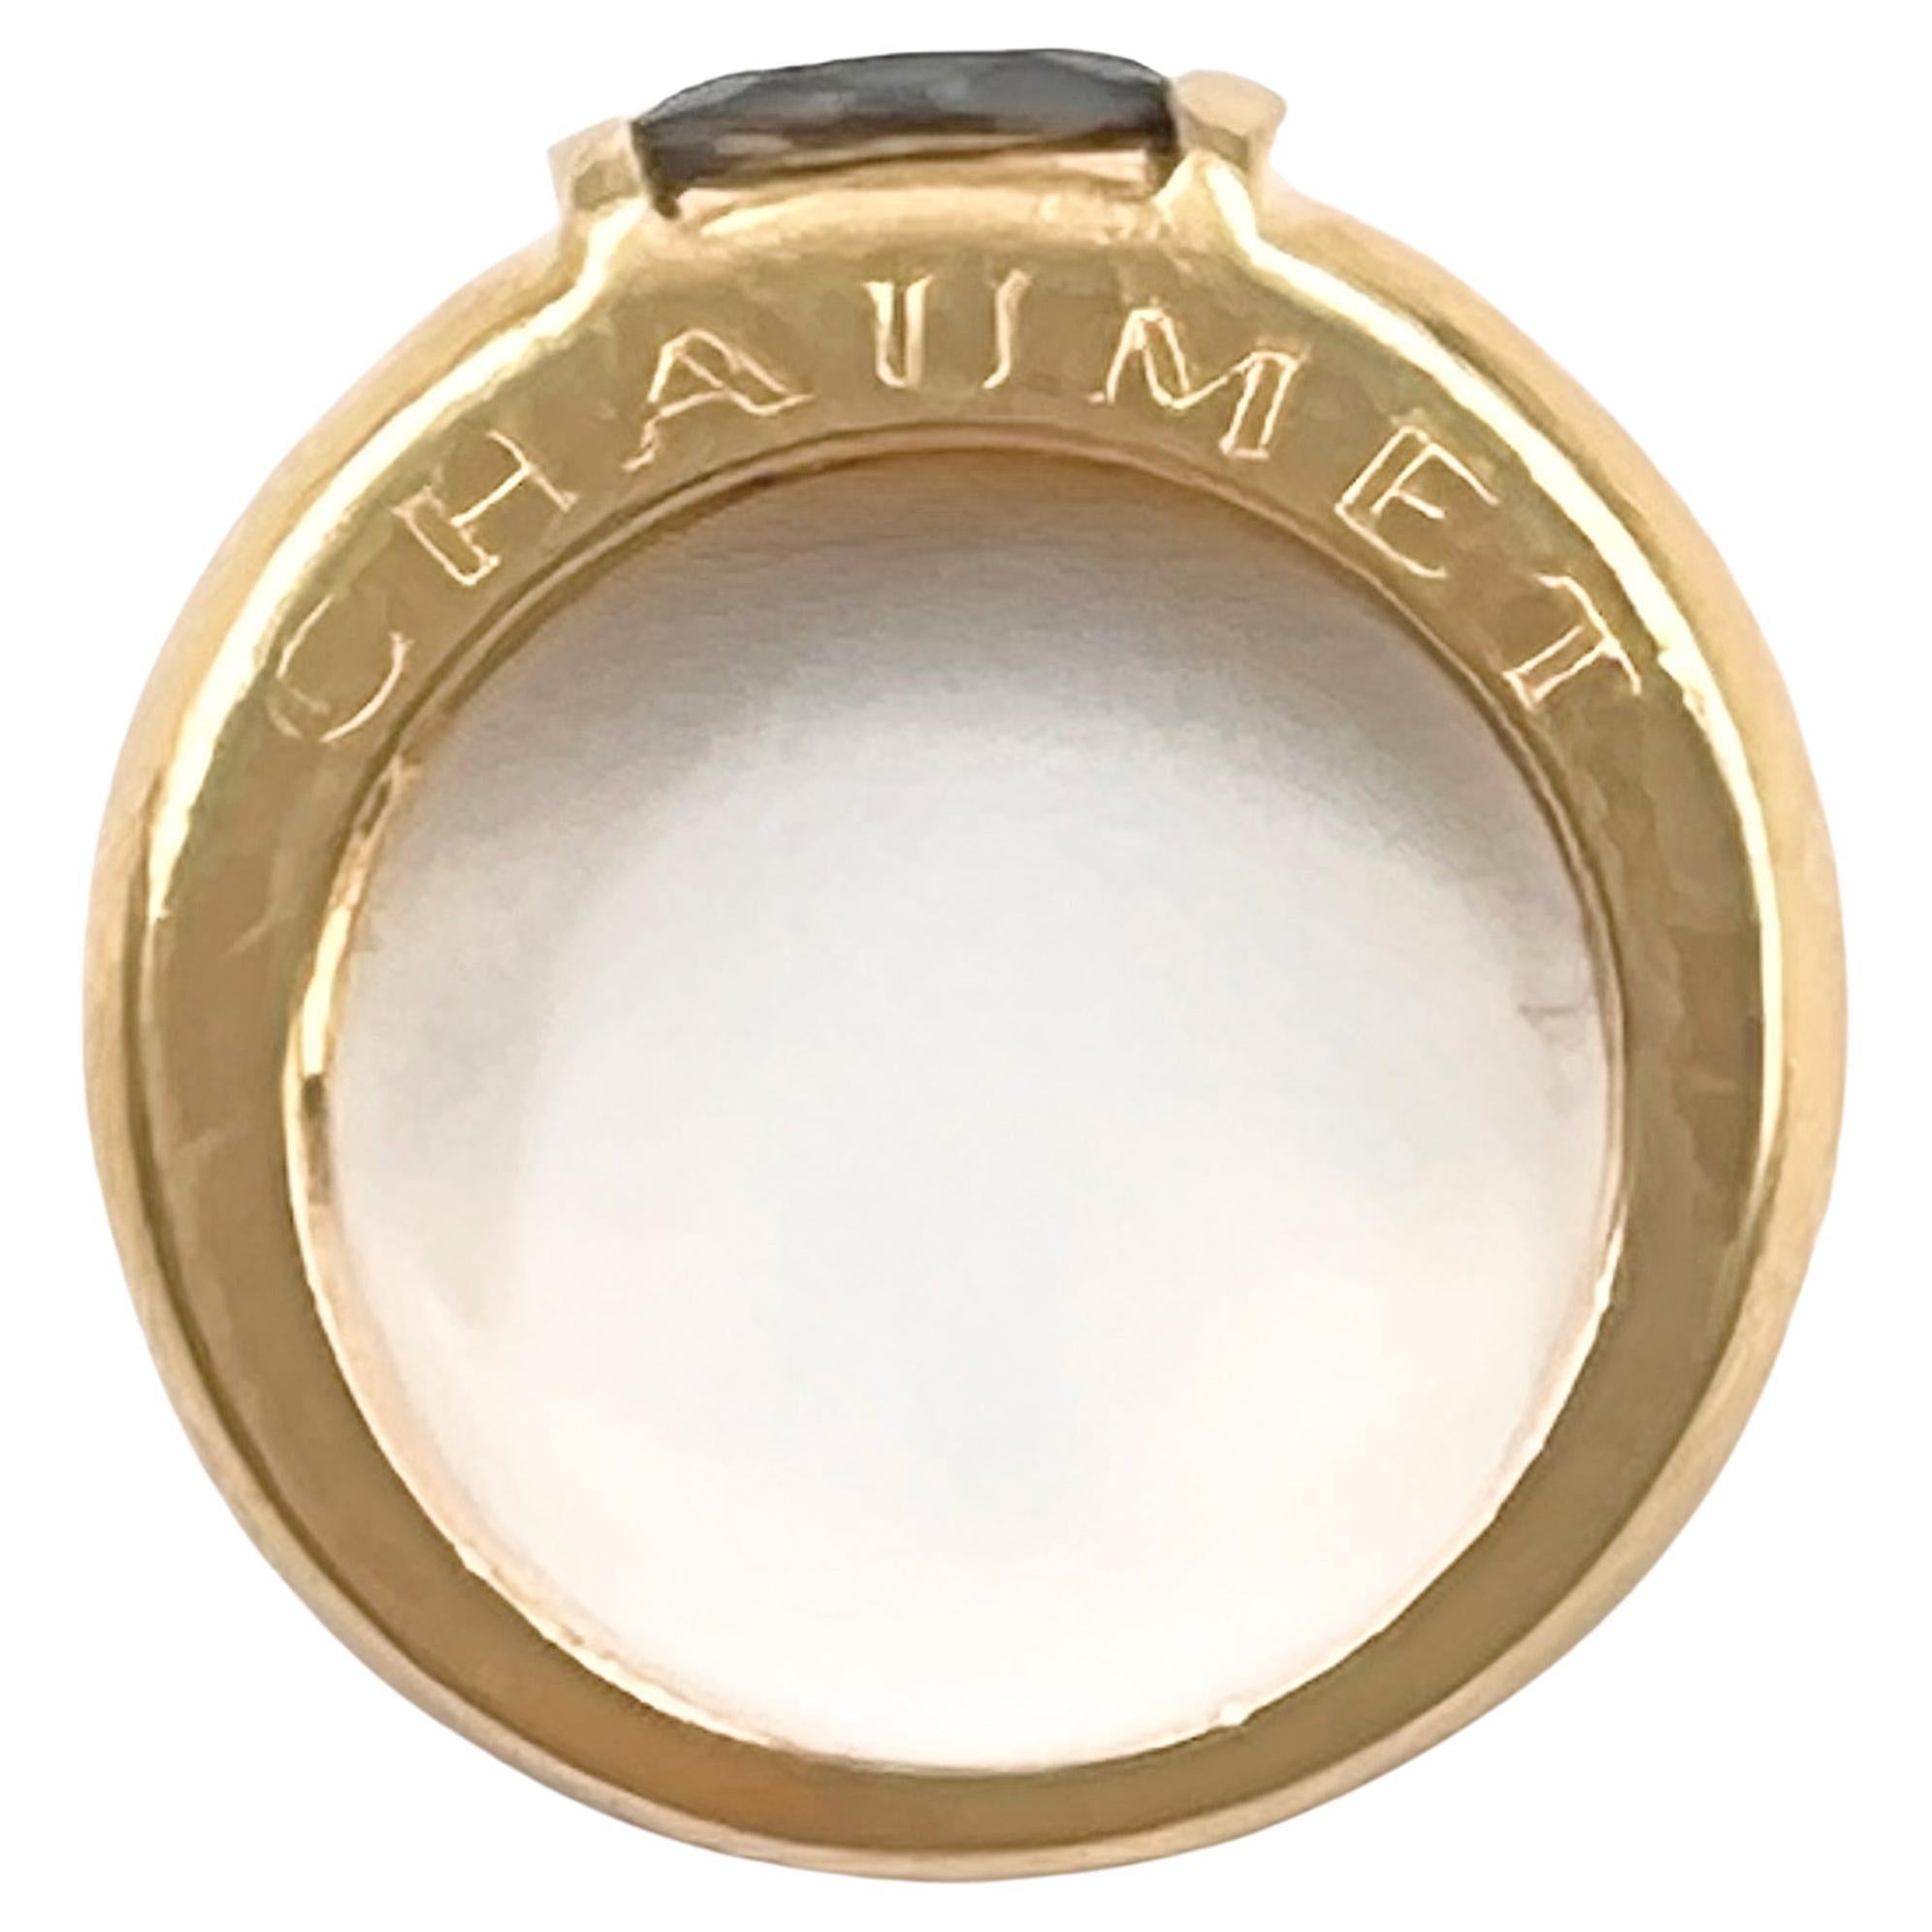 Chaumet Paris Ring aus 18 Karat Gelbgold, besetzt mit einem zentralen, ovalen, facettierten Iolithen in einem satten Violettblau mit einem Gewicht von ca. 0,84 Karat.  Poliertes 6,3 mm breites Band, das sich nach unten auf 4,2 mm verjüngt.  Signiert